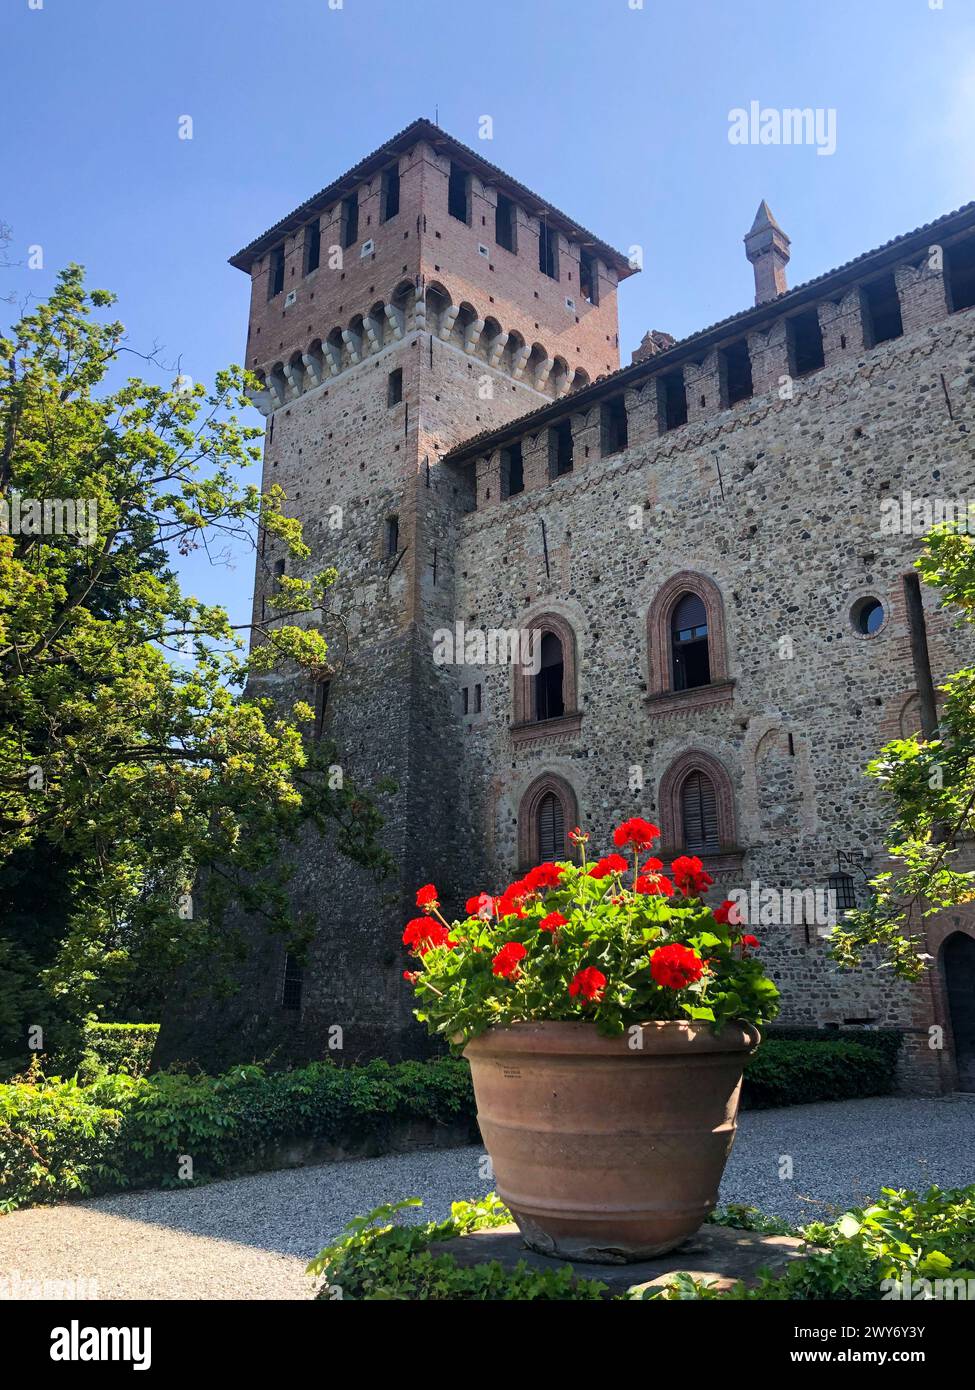 Grazzano Visconti, italy - june 11, 2023: view of medieval castle restored by Giuseppe Visconti di Modrone in Piacenza province, stone and brick walls Stock Photo